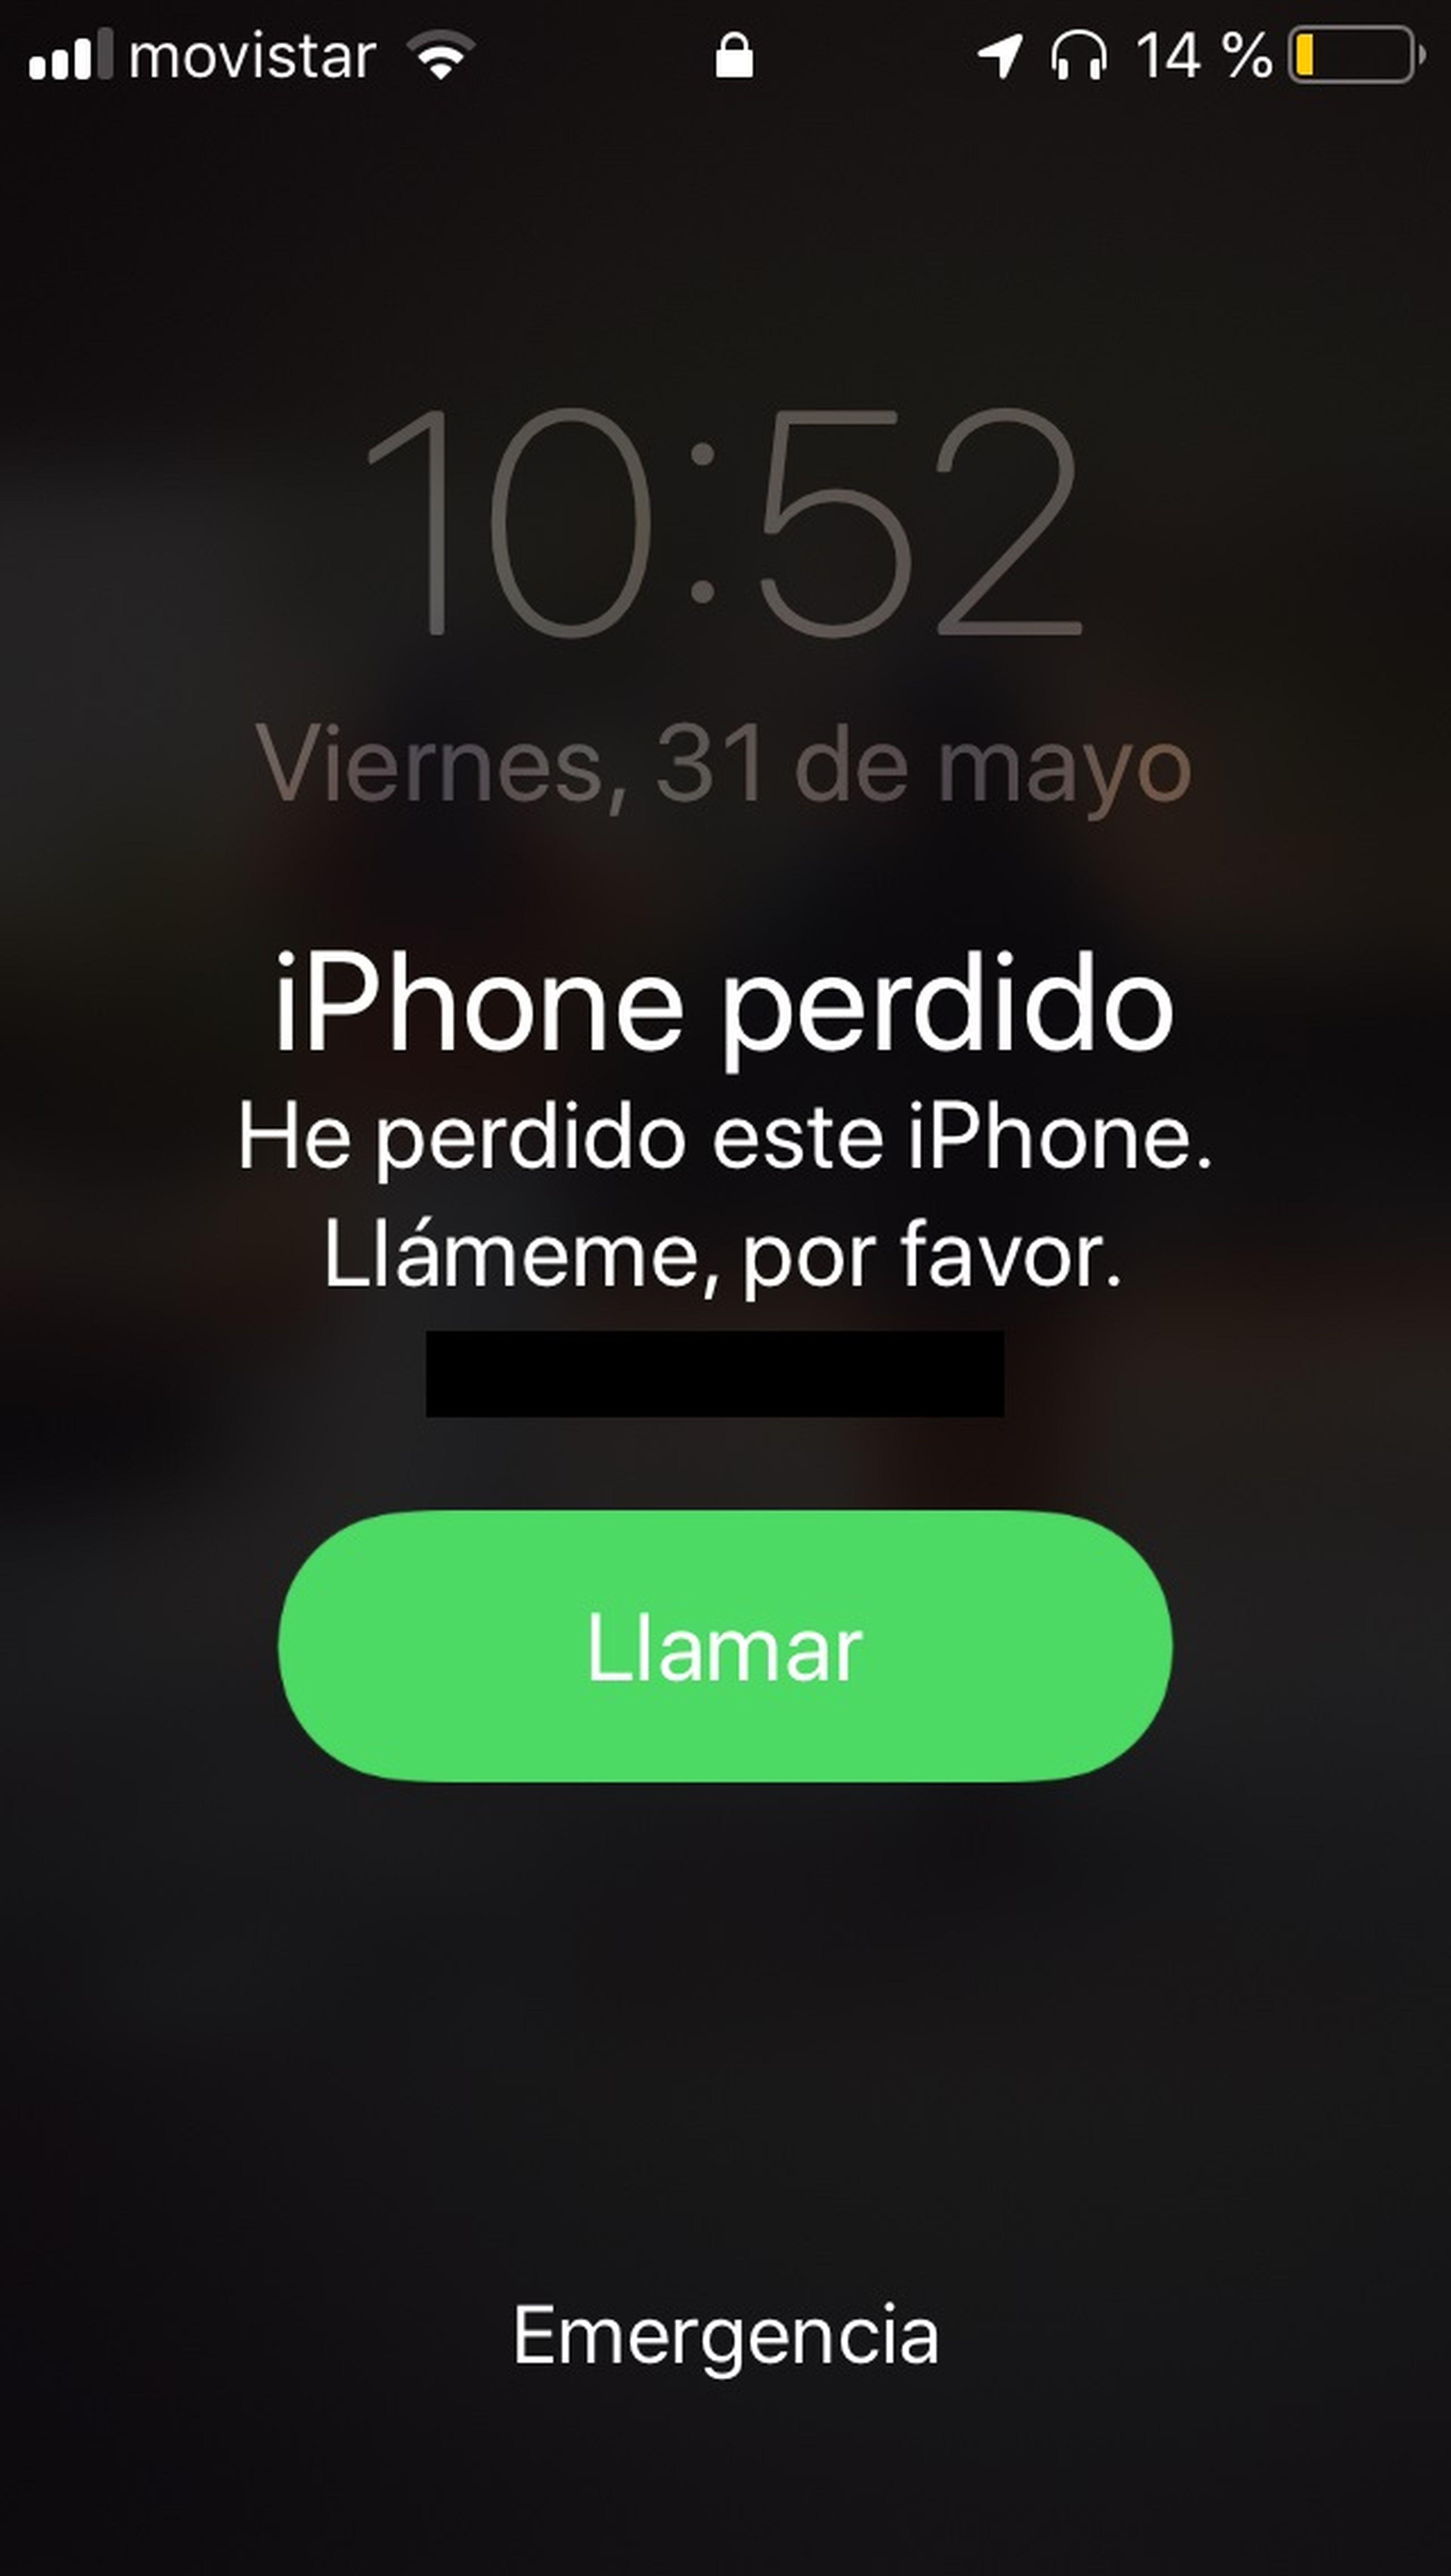 Mensaje en iPhone perdido